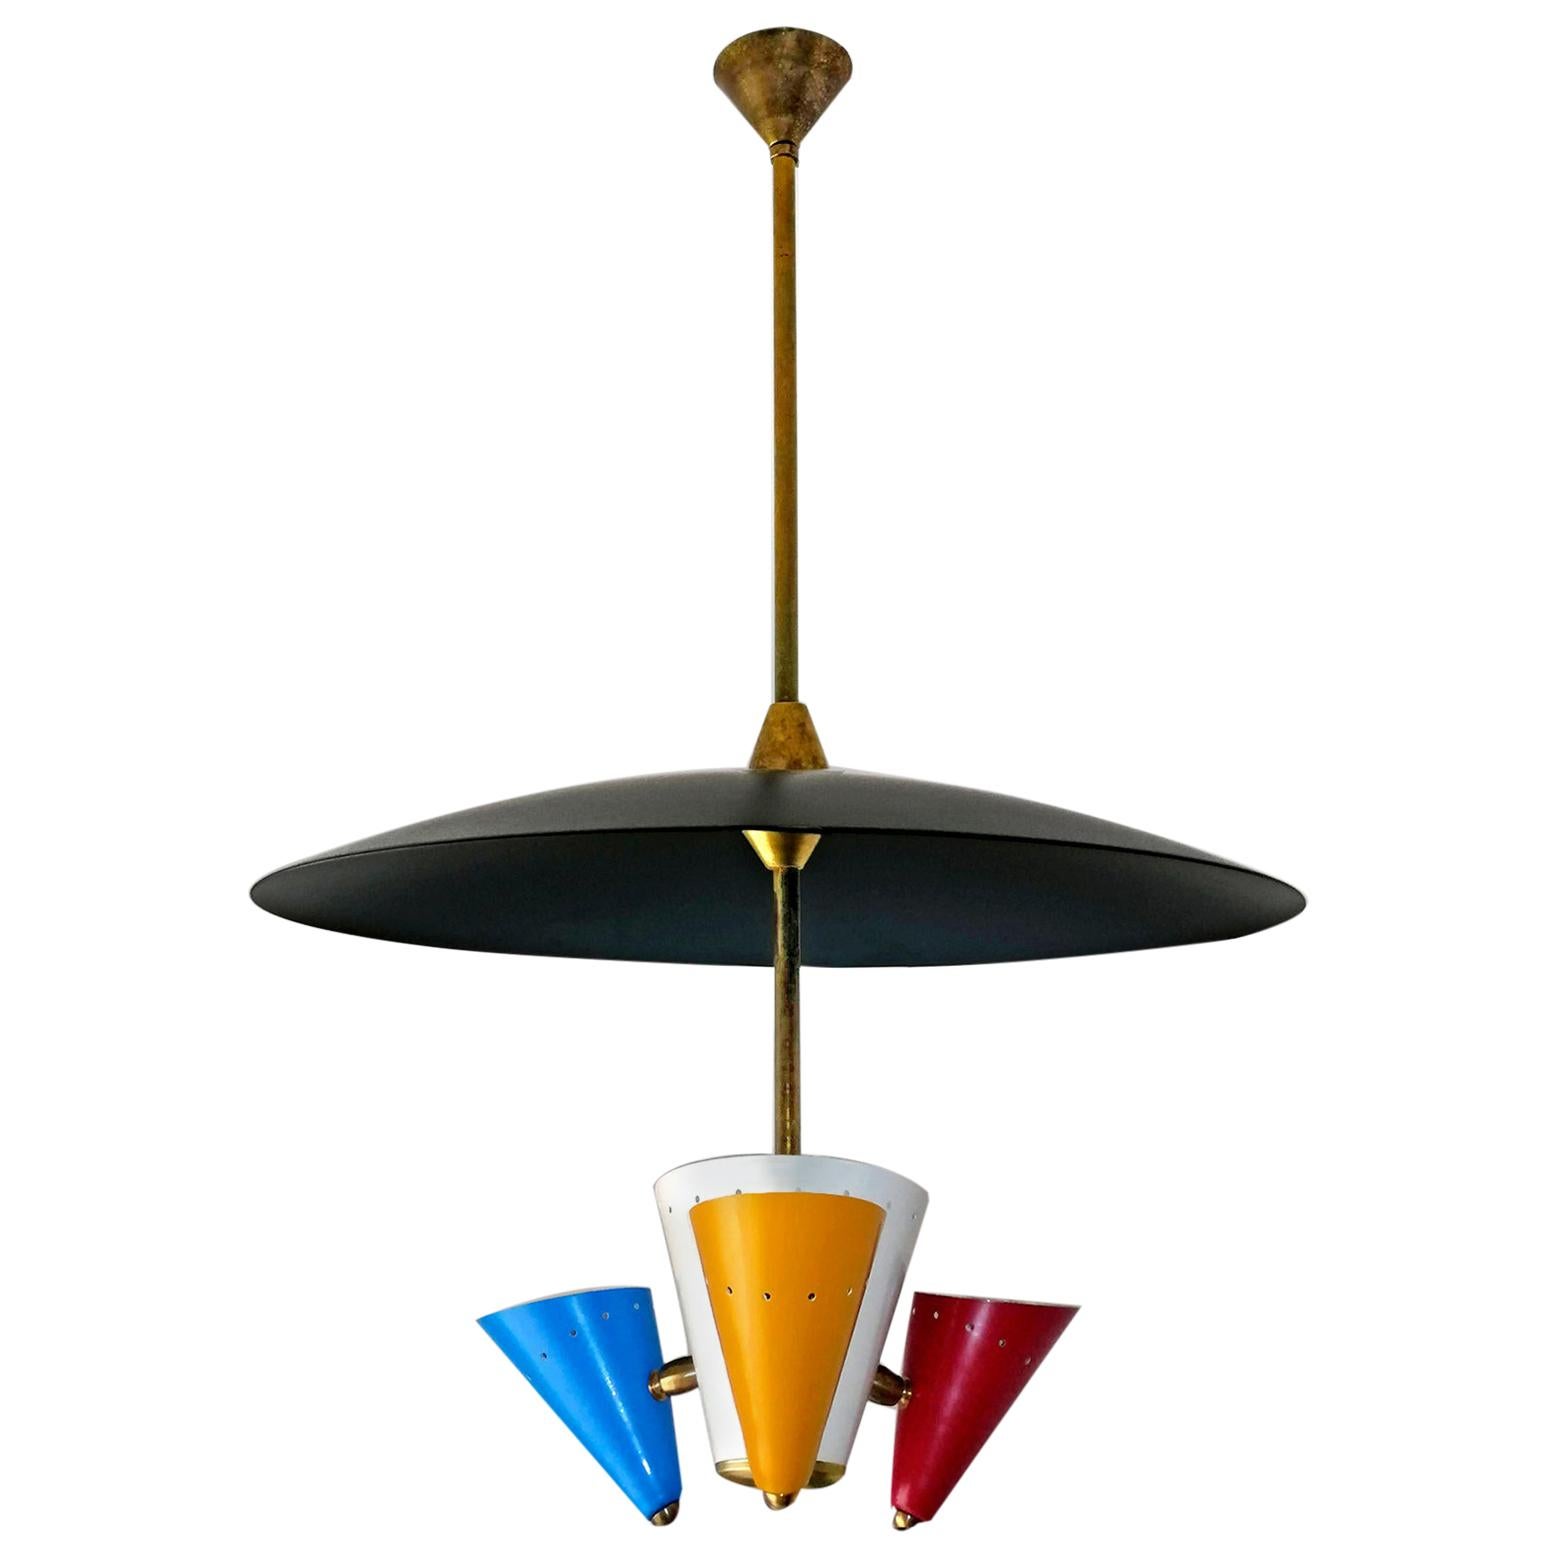 Stilnovo Lustre Spoutnik moderne en forme de soucoupe volante en noir, rouge, bleu et jaune